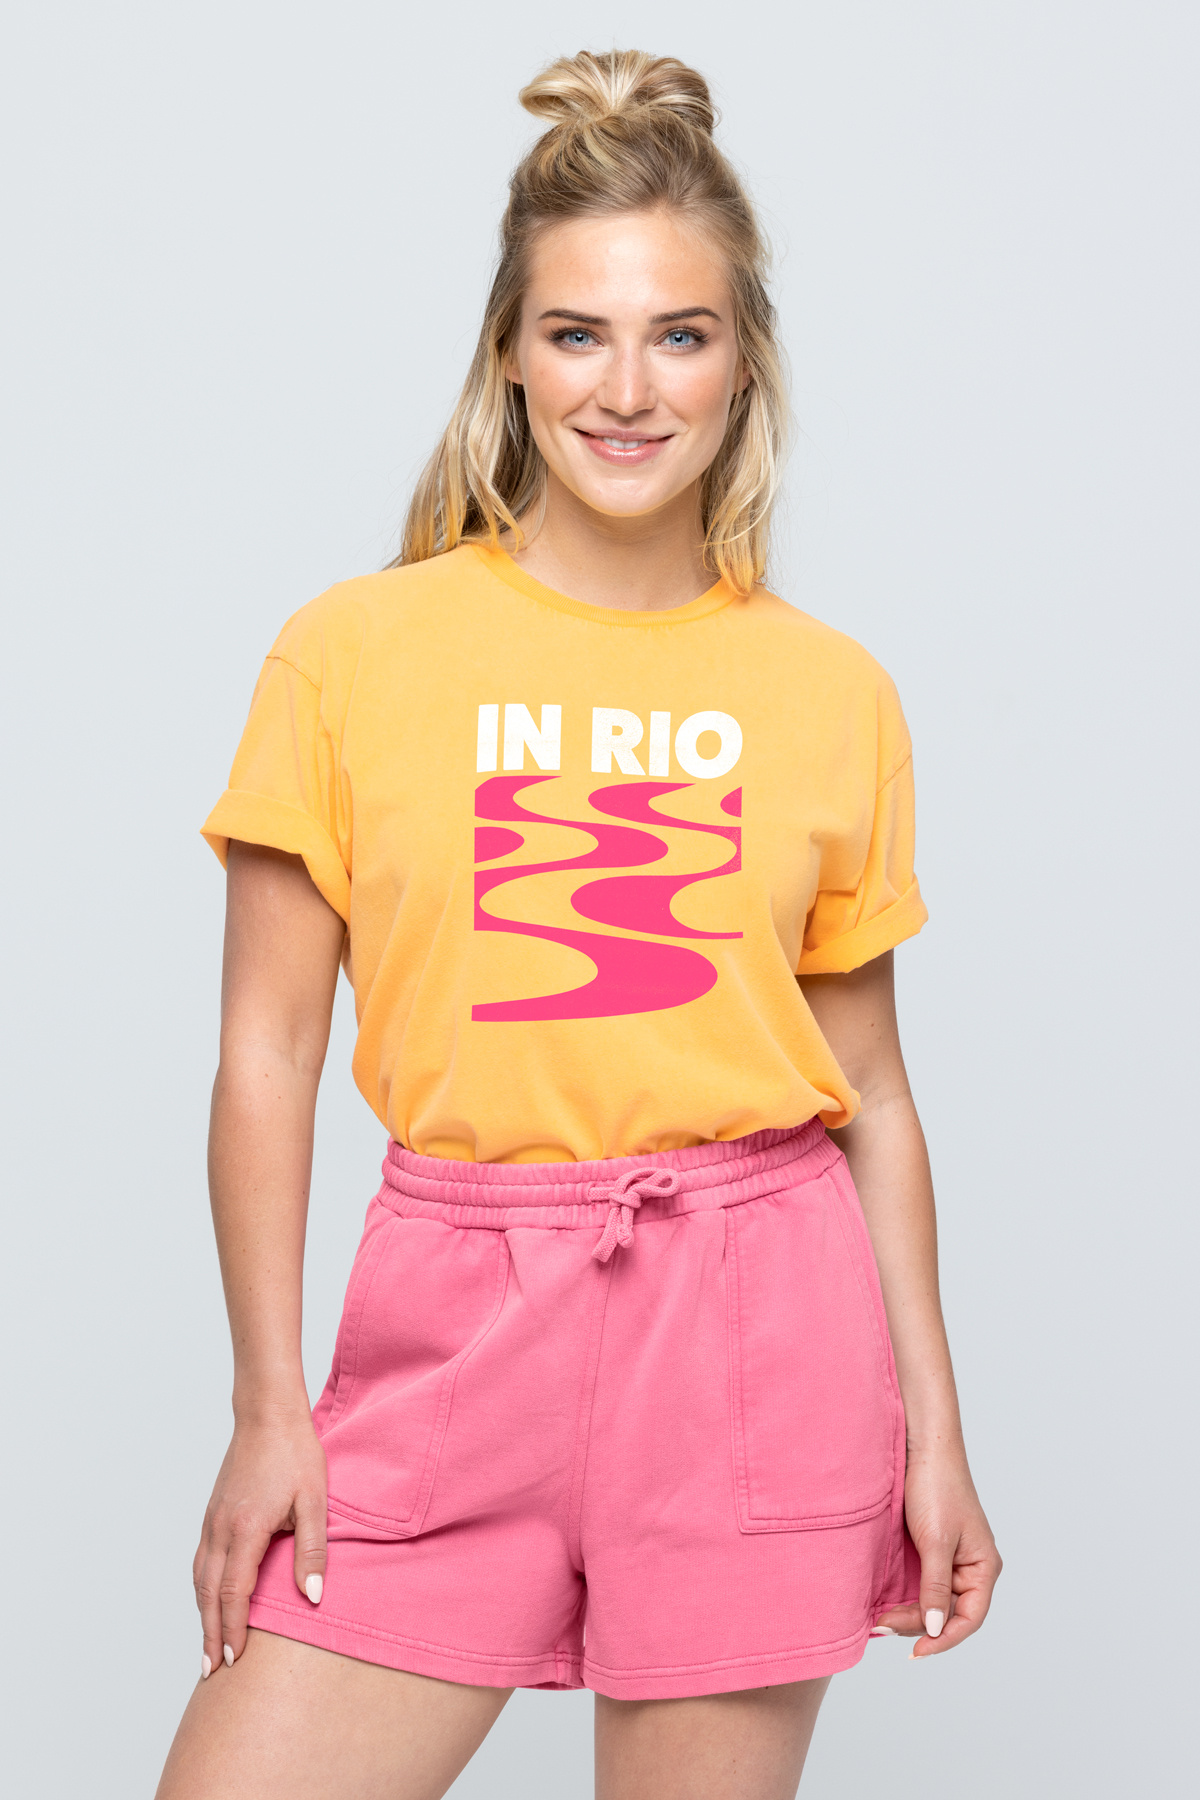 Tshirt Washed IN RIO